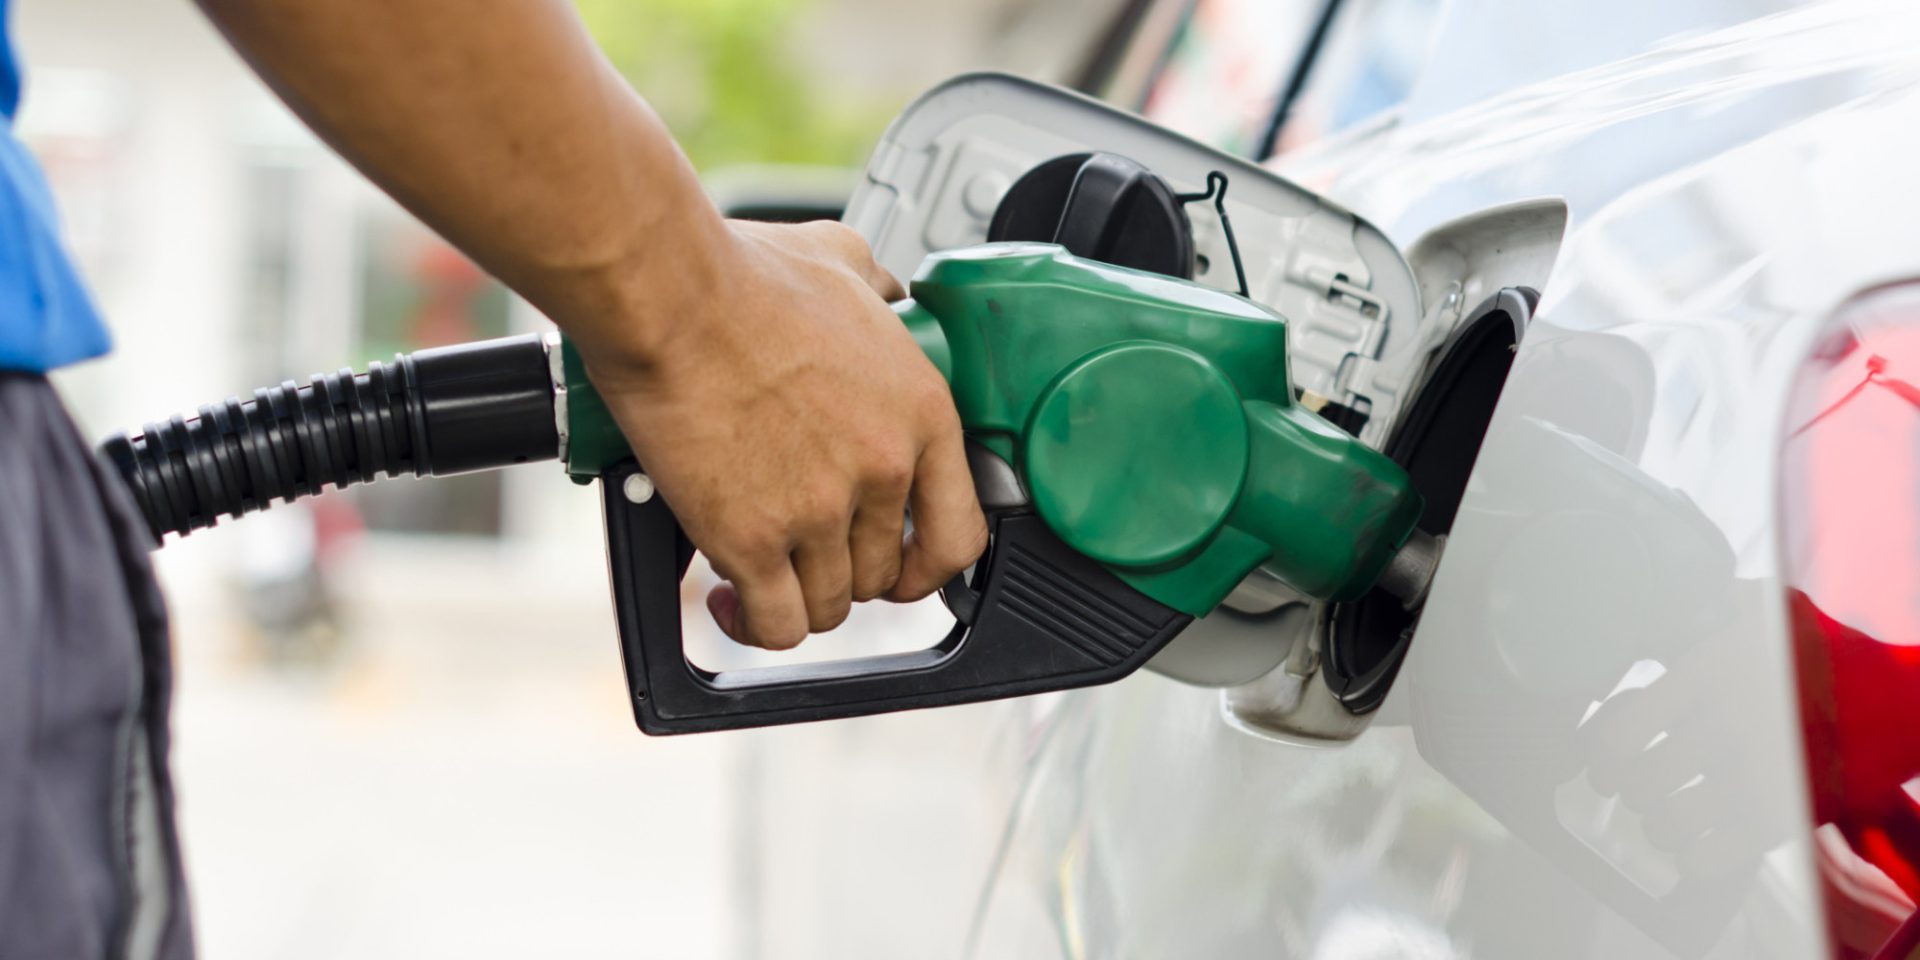 Combustíveis vão subir de preço. Aumento será mais acentuado no gasóleo